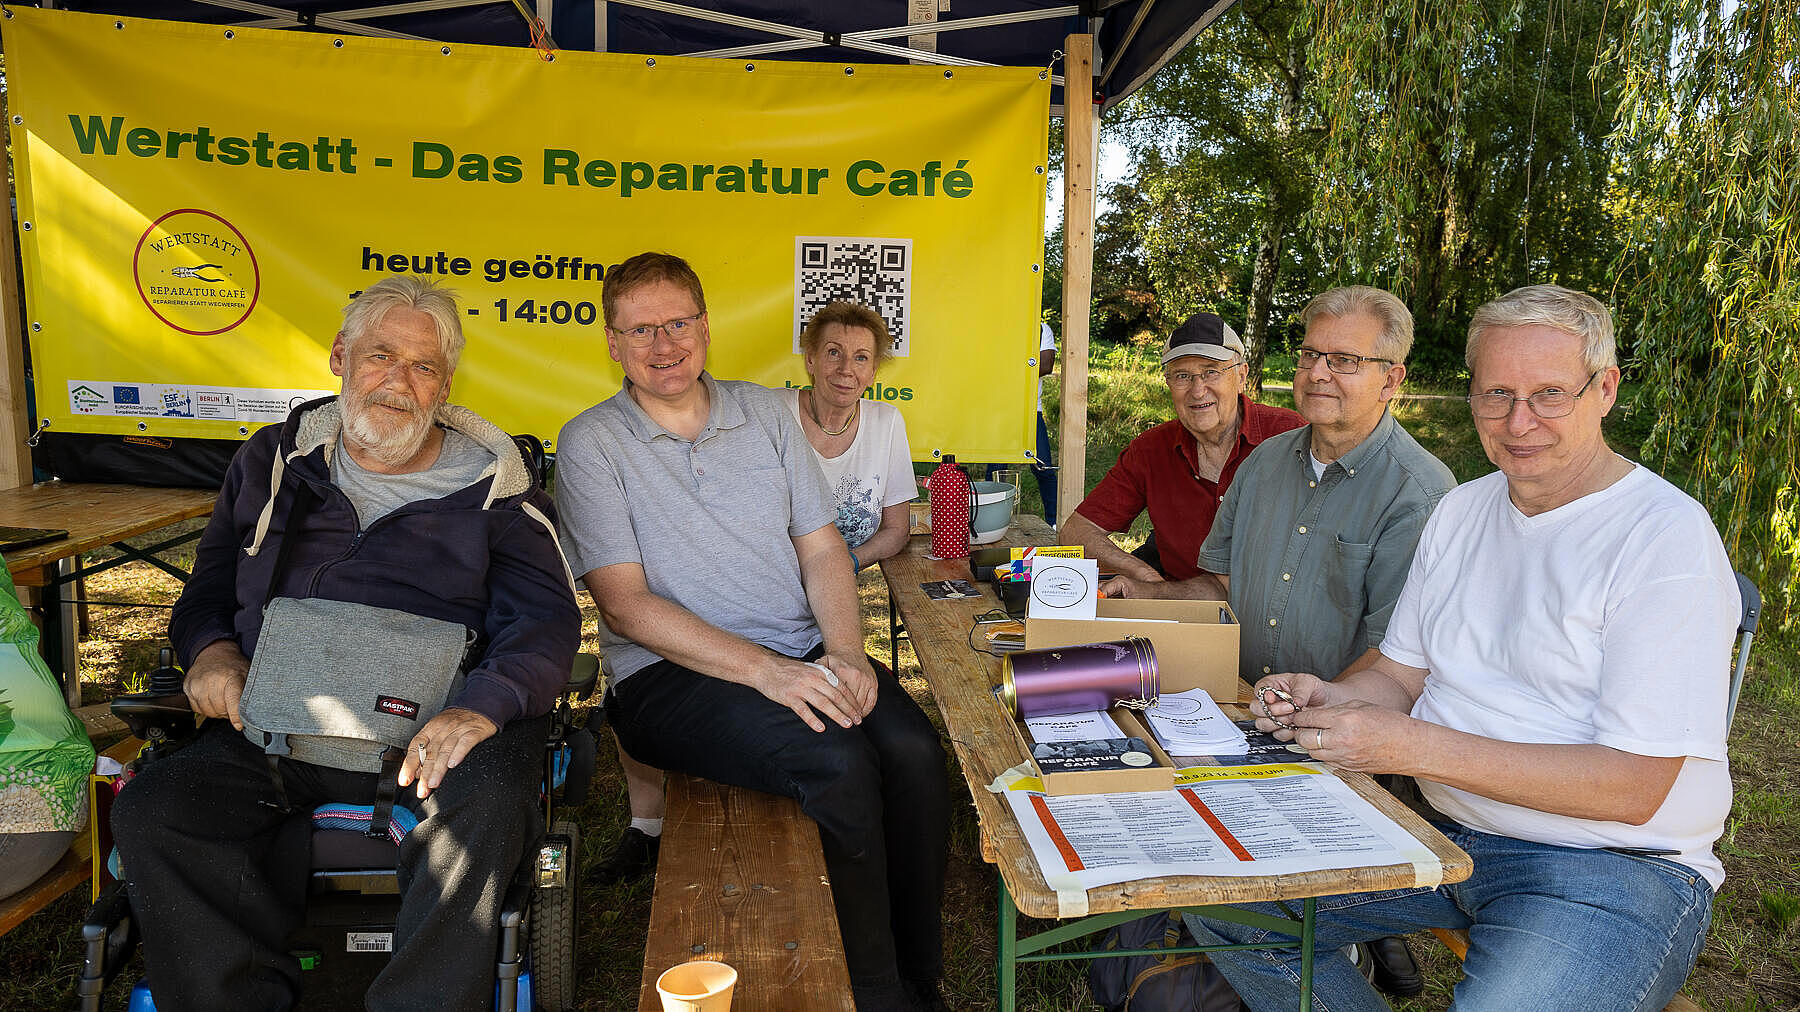 Außenaufnahme zeigt eine Gruppe von älteren Menschen, die vor einem Plakat der Wertstatt - Das Reparatur-Café sitzen.